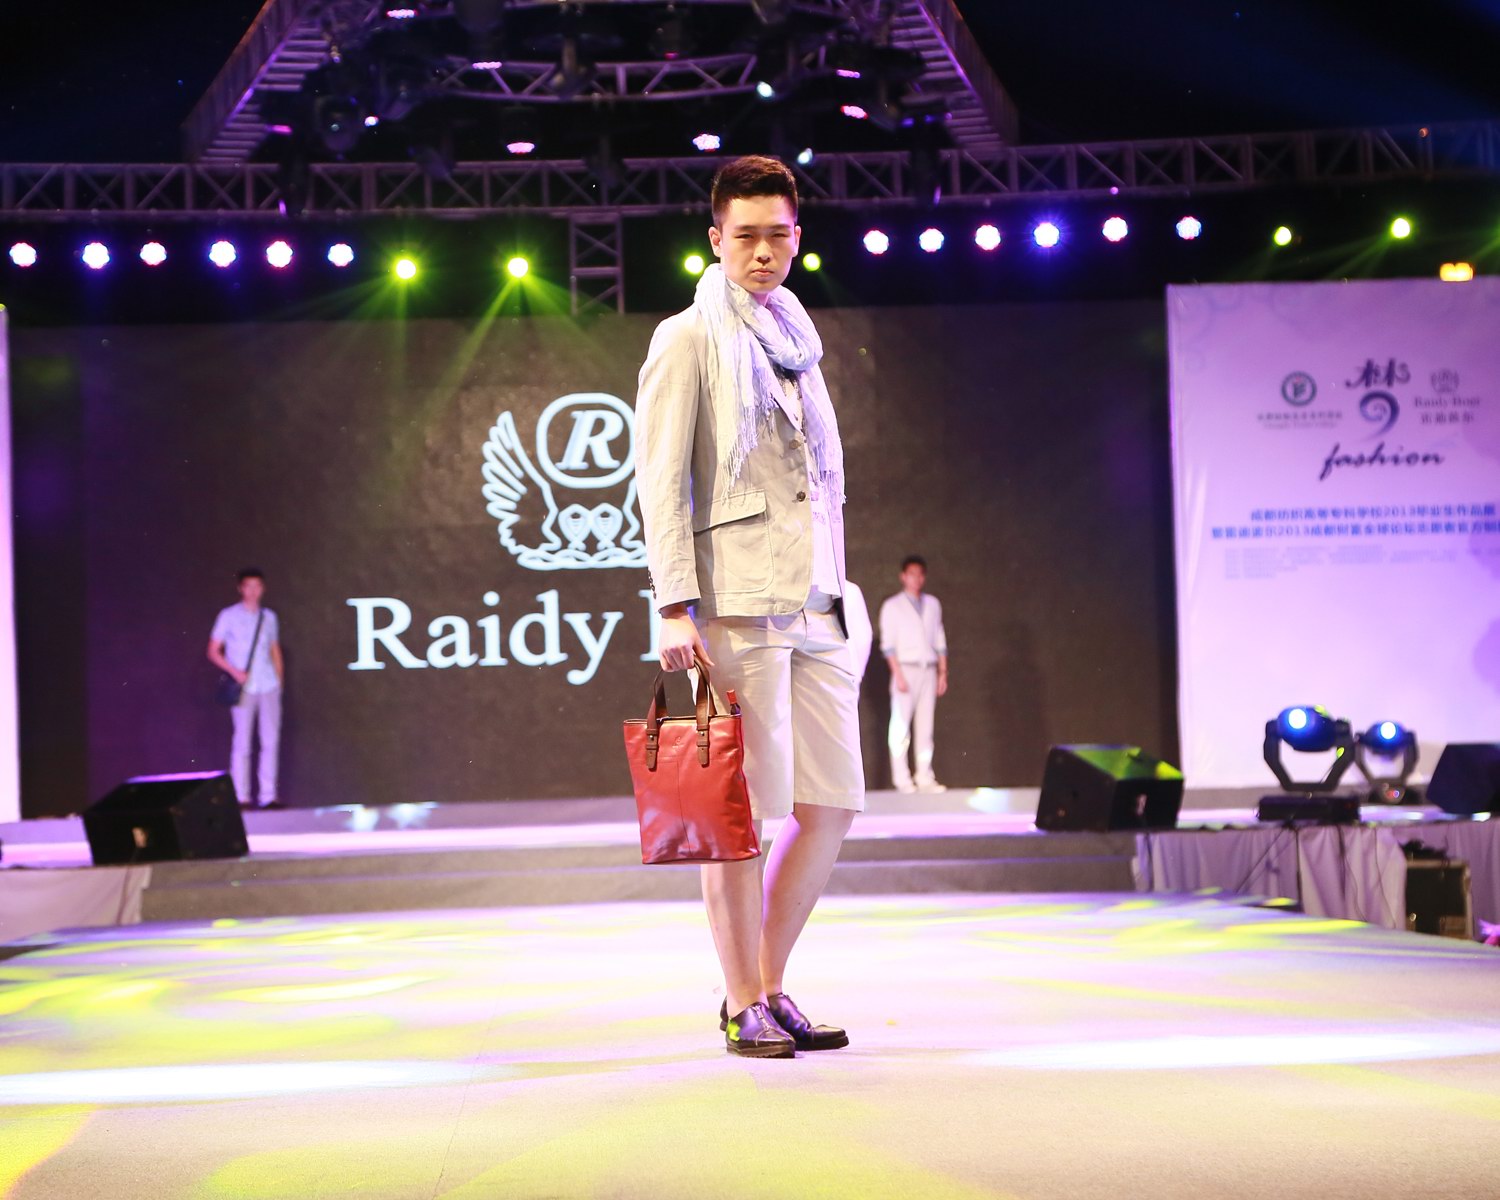 雷迪波尔携旗下三大品牌Raidy Boer、GHILARO、ferrante展示顶尖男装时尚风采